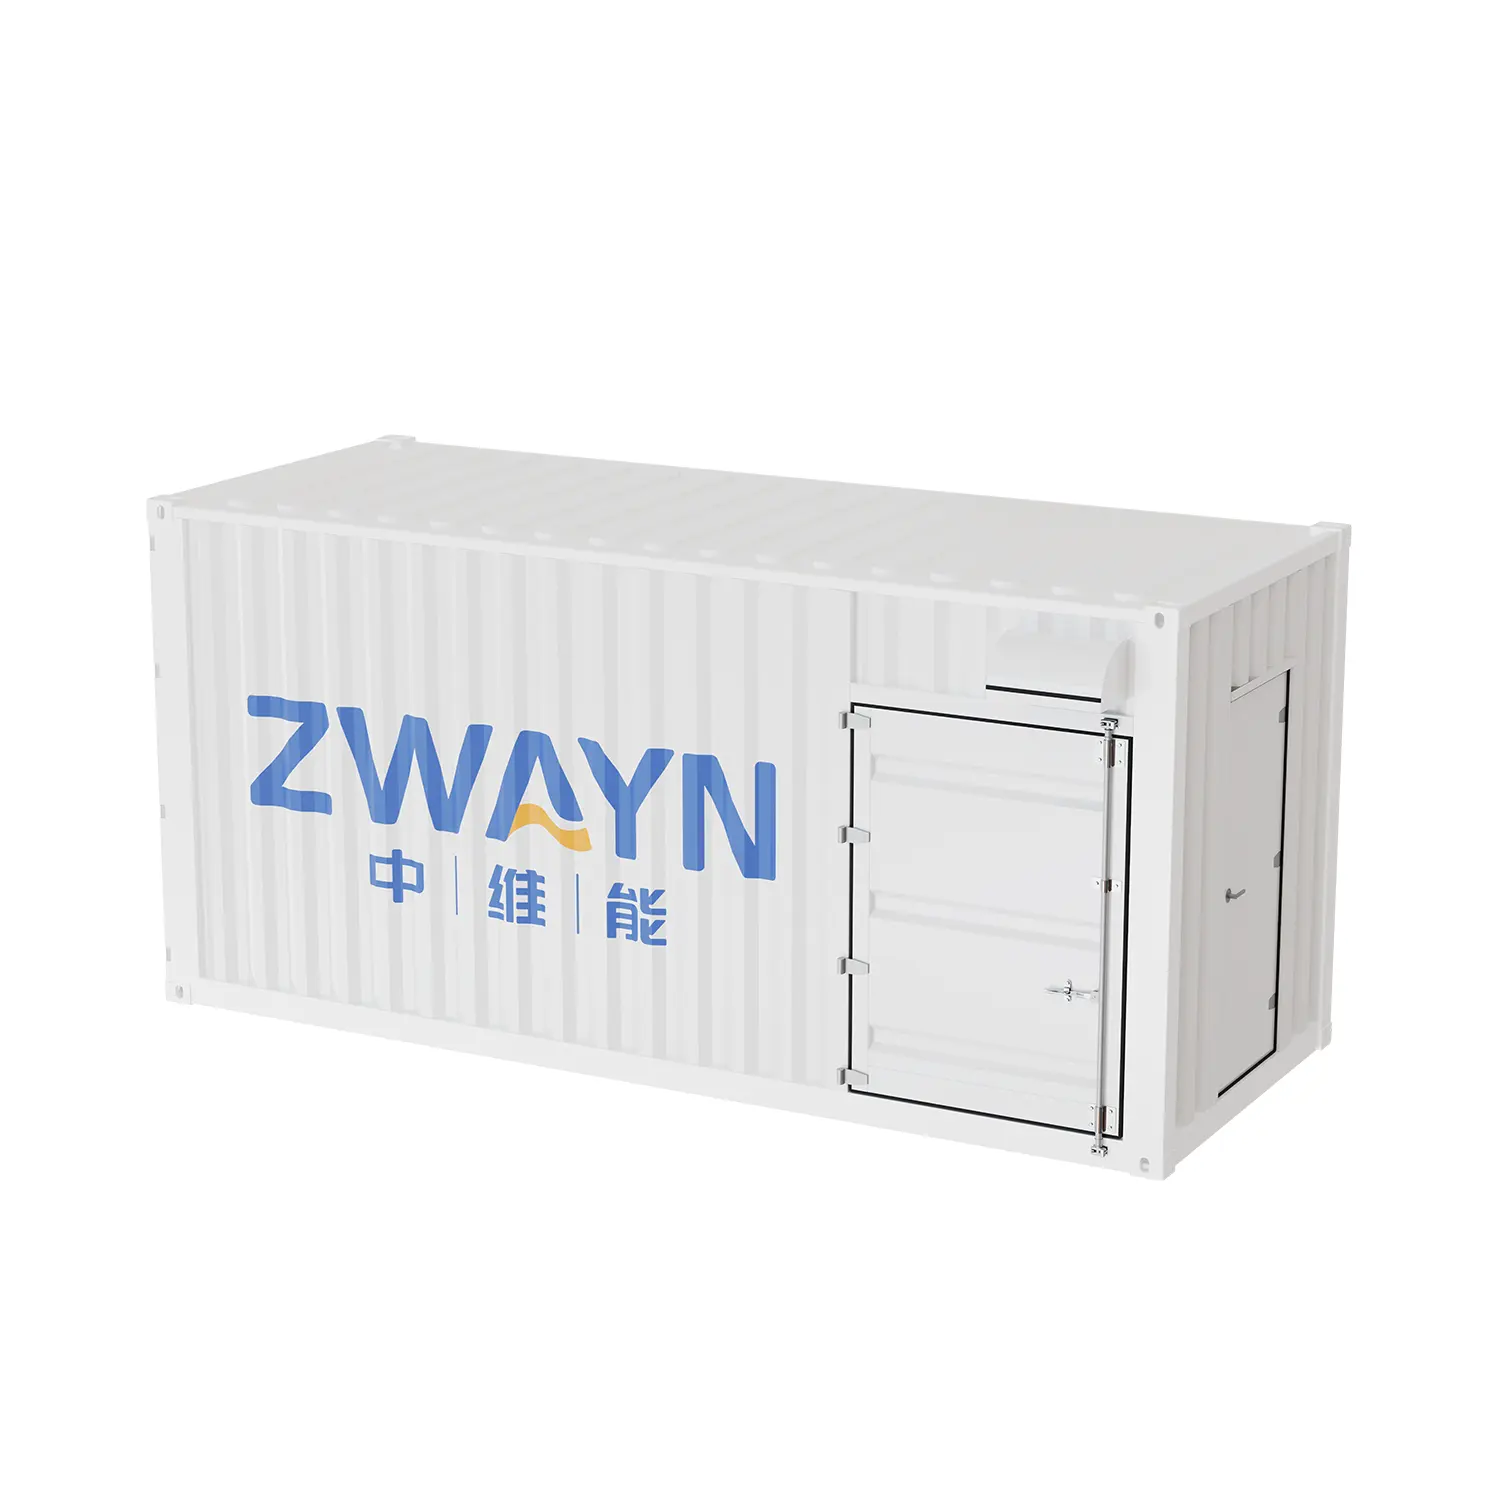 Zwayn 1.5Mwh Megawatt lityum iyon piller konteyner sanayi için güneş enerjisi depolama